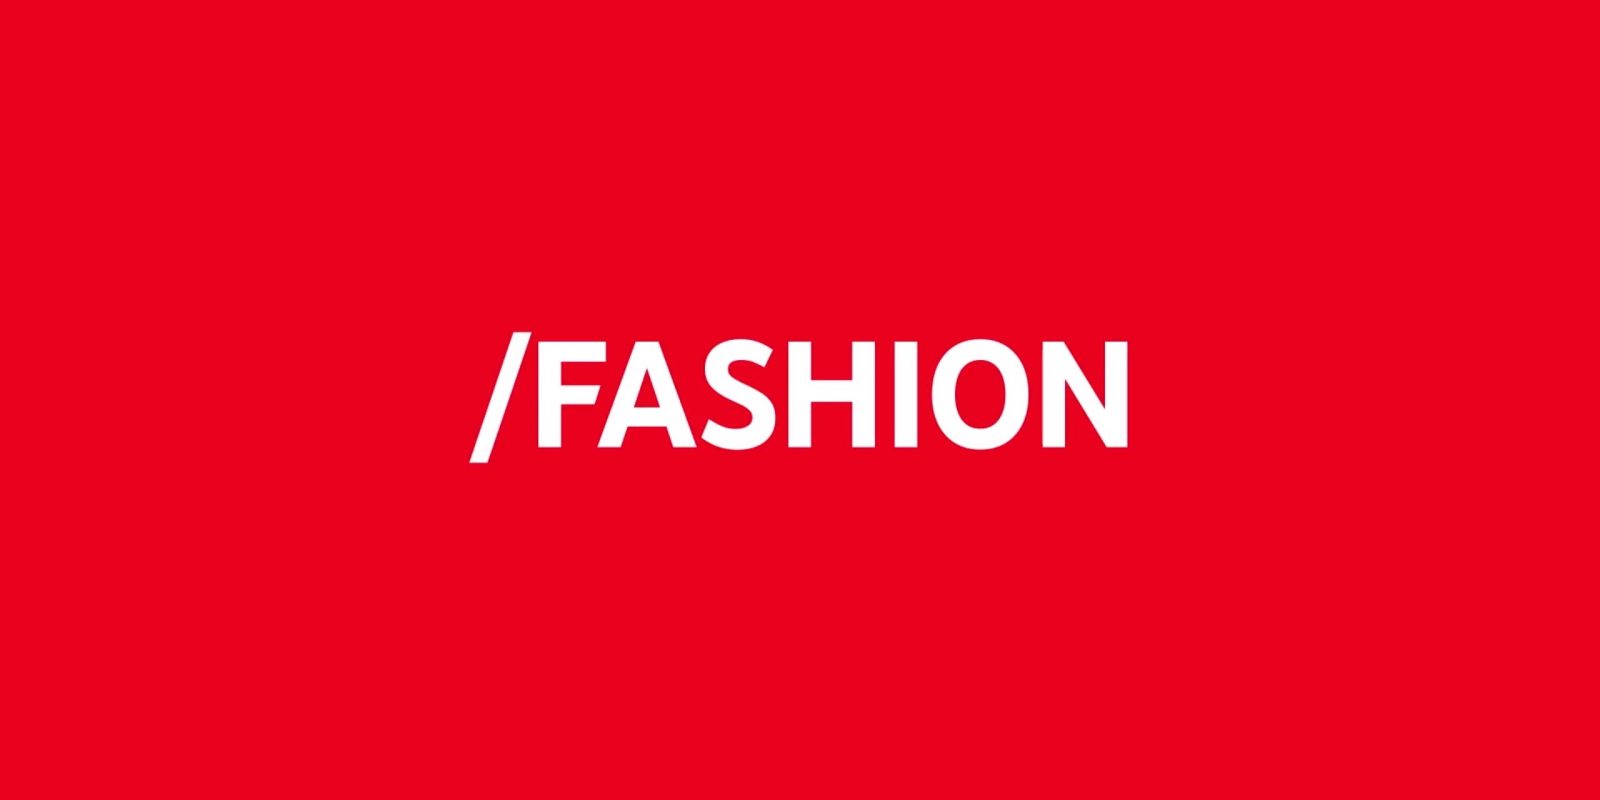 Apresentamos o YouTube.com/Fashion! Destinado a conteúdo de moda e beleza!